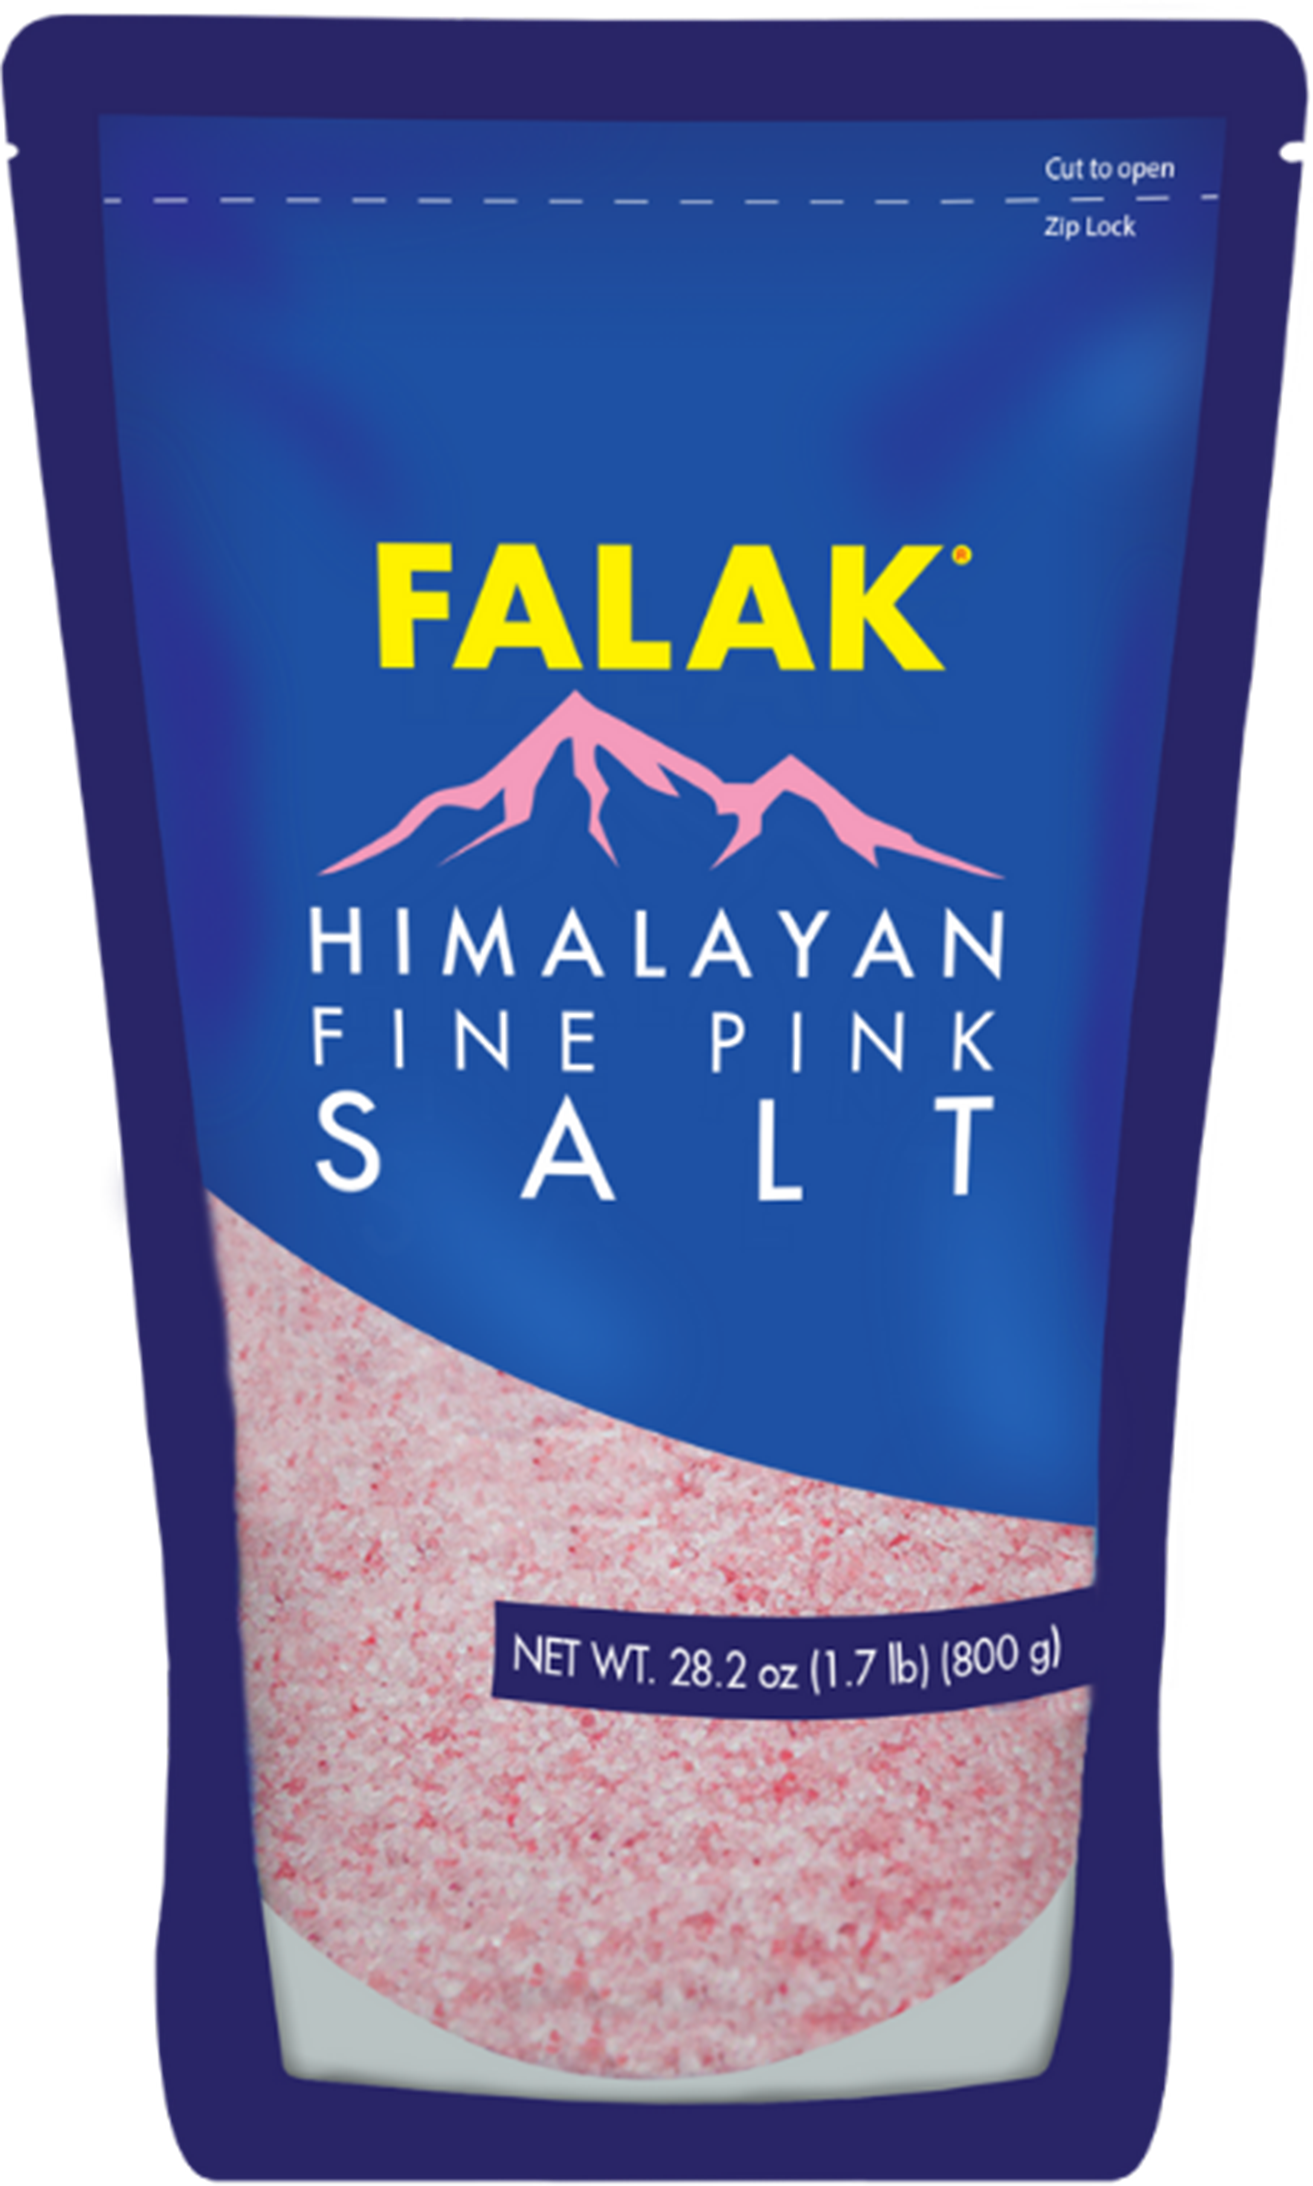 Falak Himalayan Pink Salt